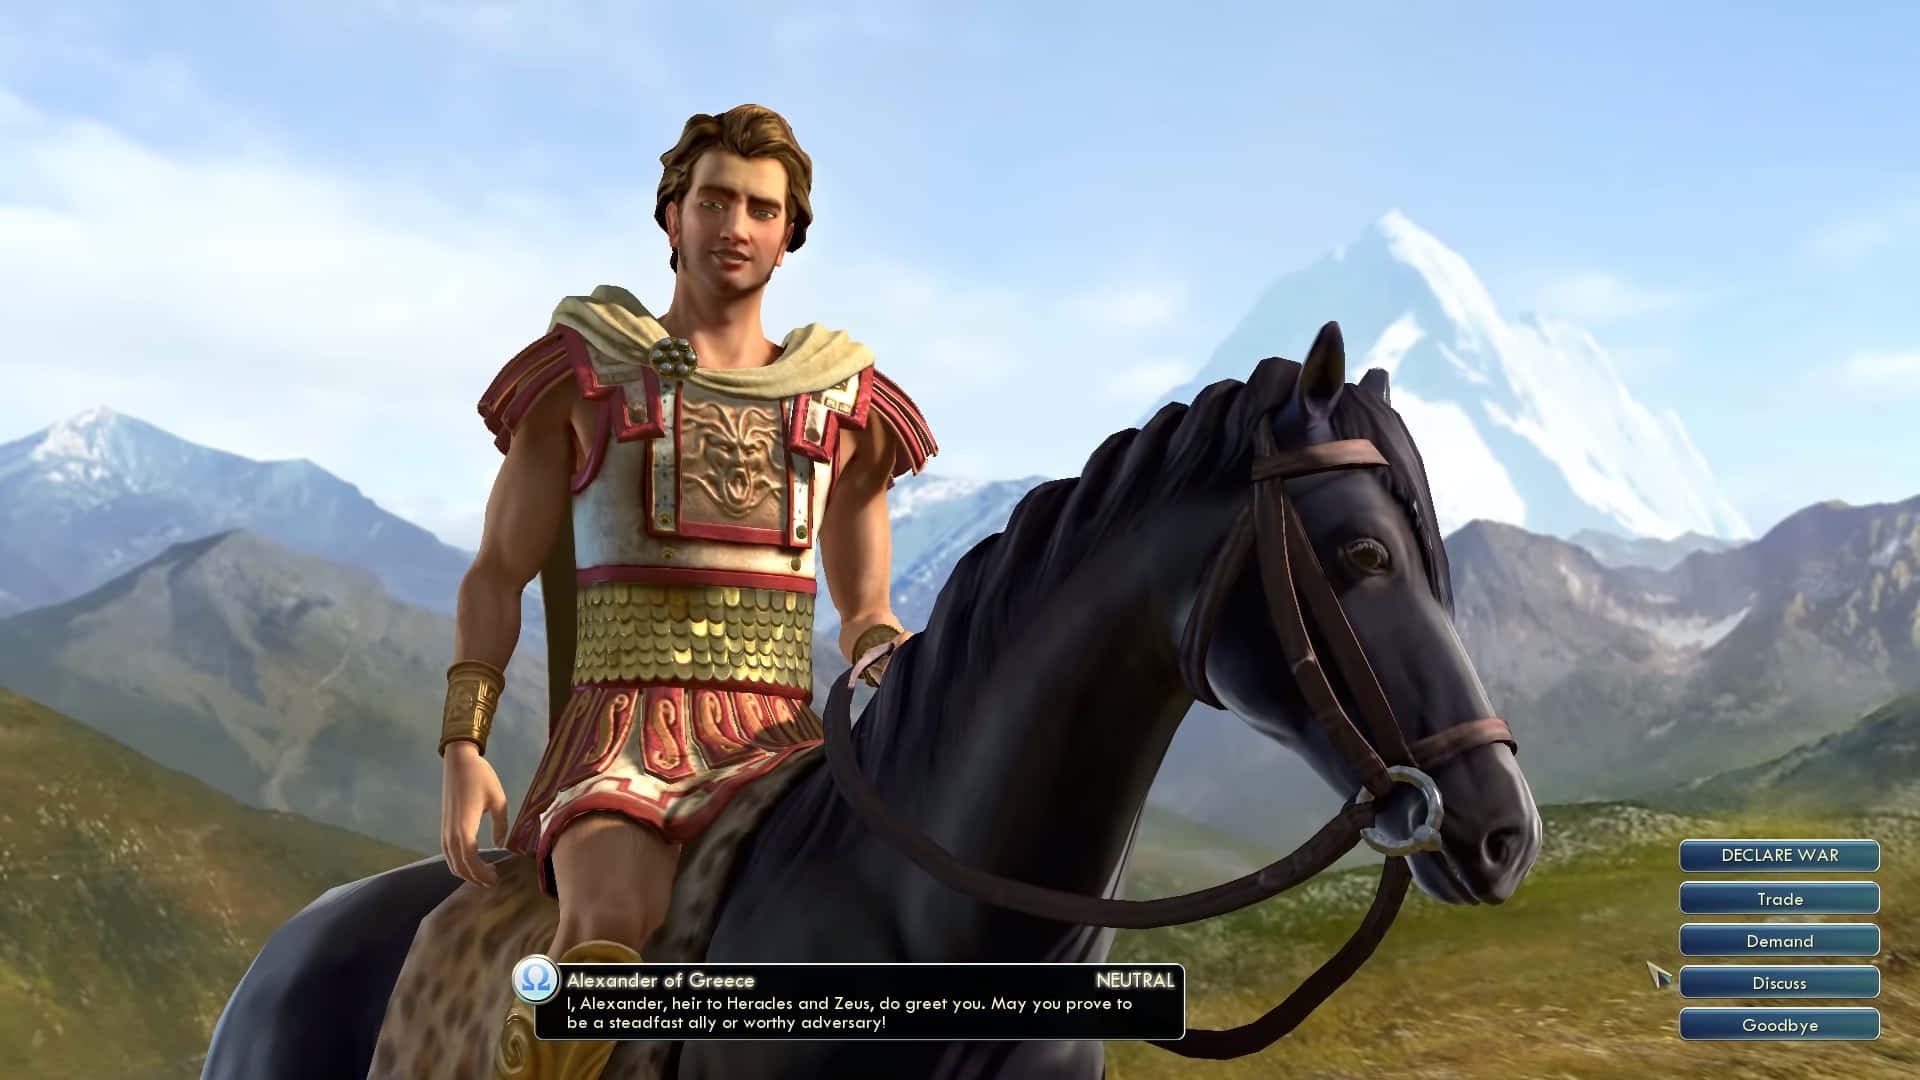 Unuomo Sta Cavalcando Un Cavallo In Un Videogioco.